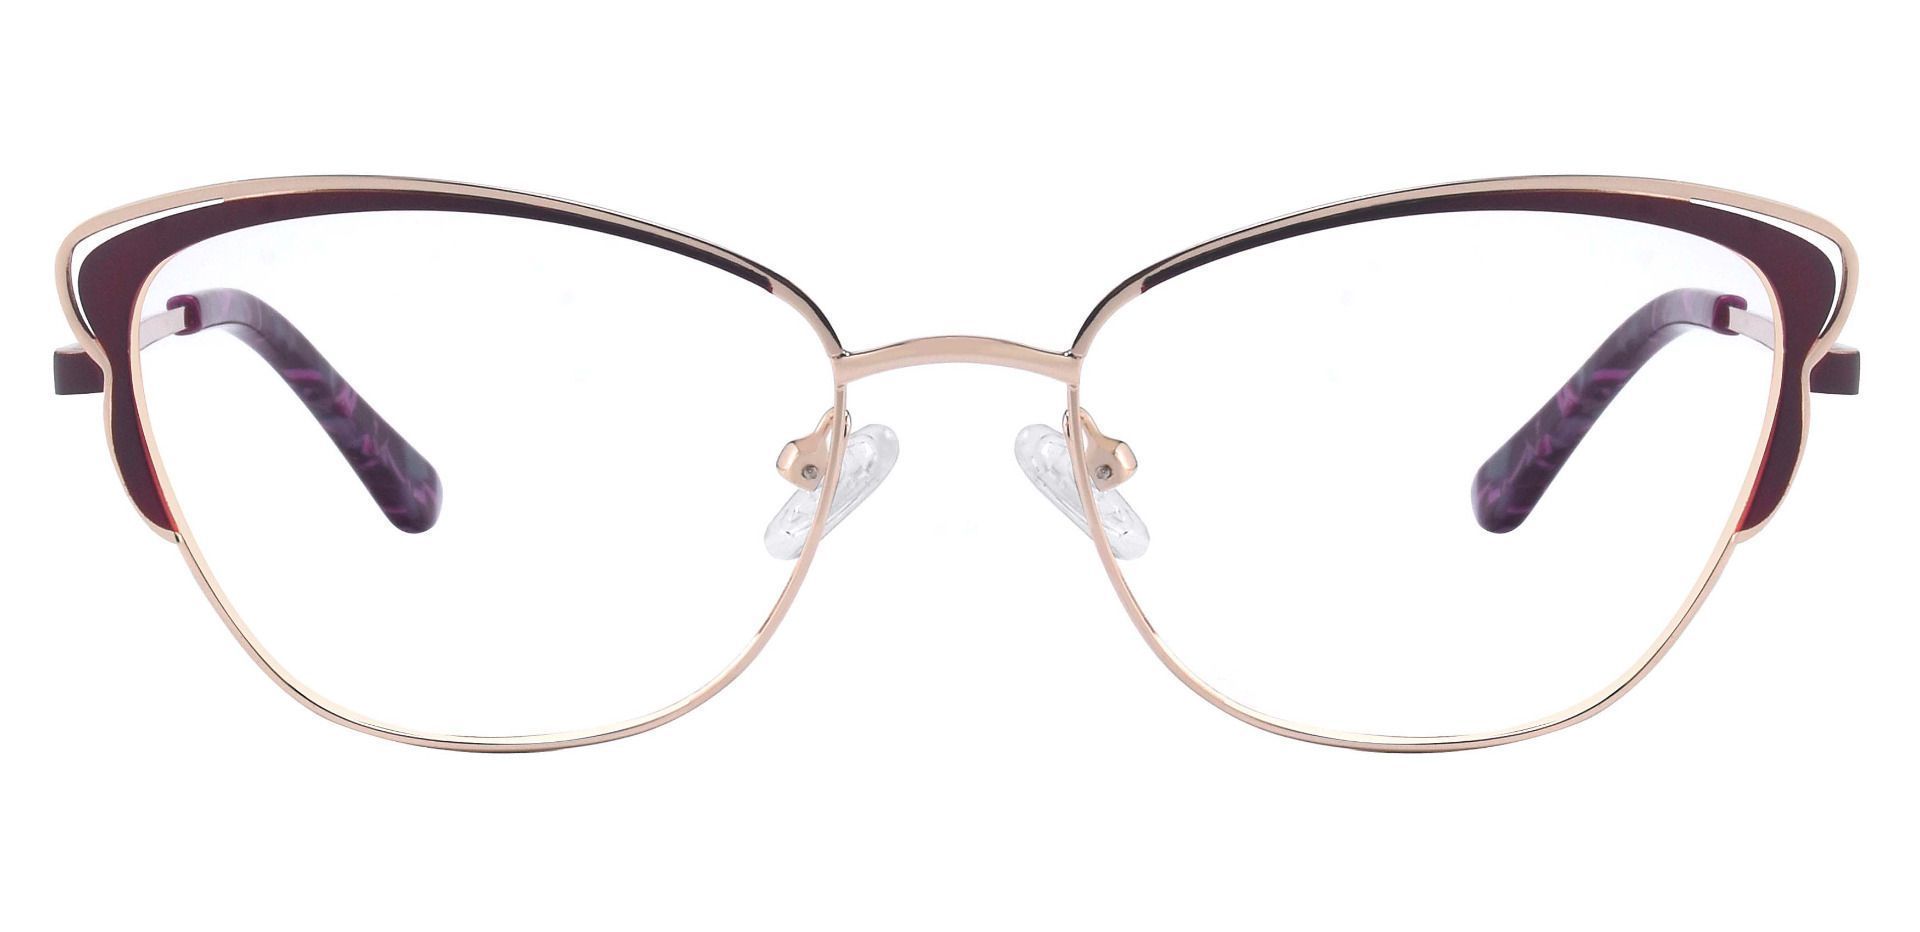 Dickinson Cat Eye Prescription Glasses - Red | Women's Eyeglasses ...